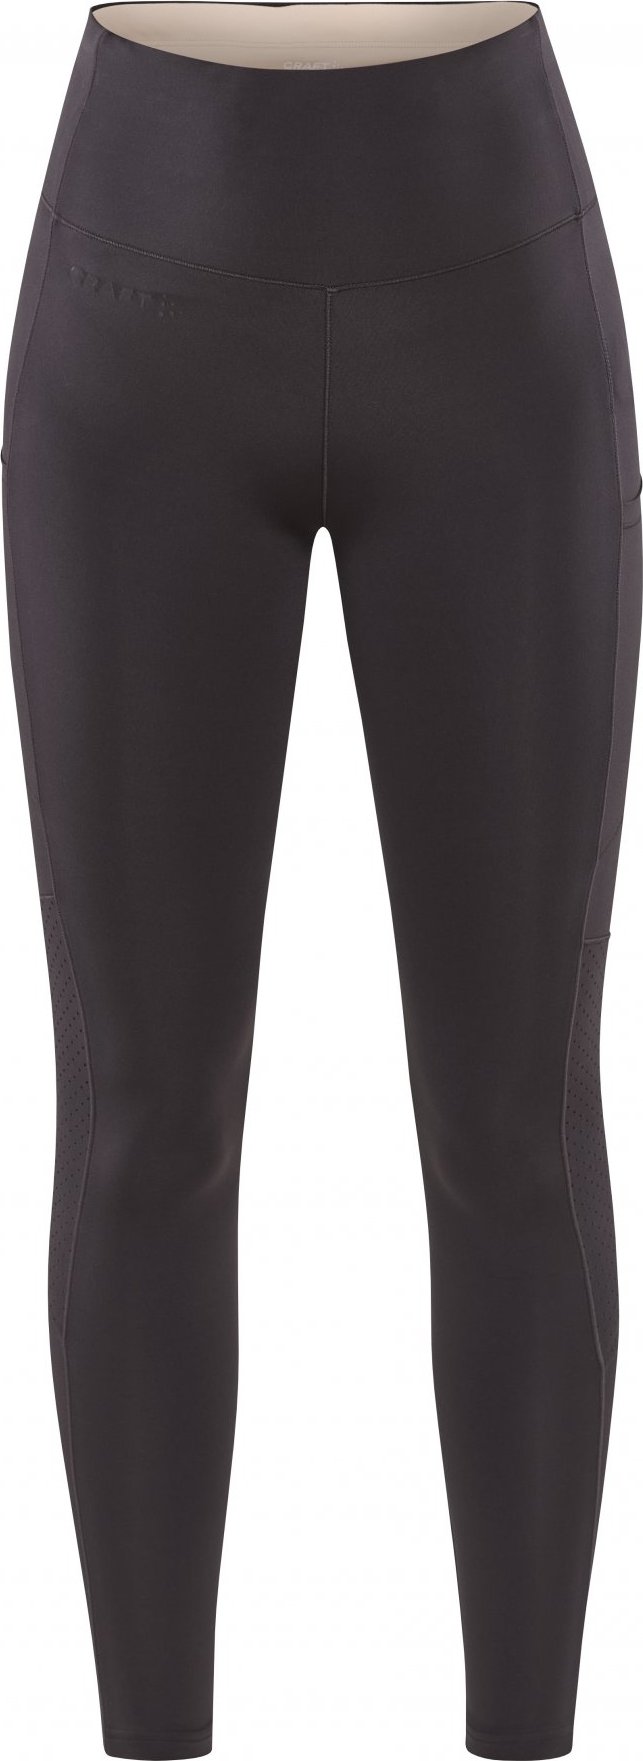 Dámské elastické kalhoty CRAFT Adv Essence 2 šedé Velikost: XS